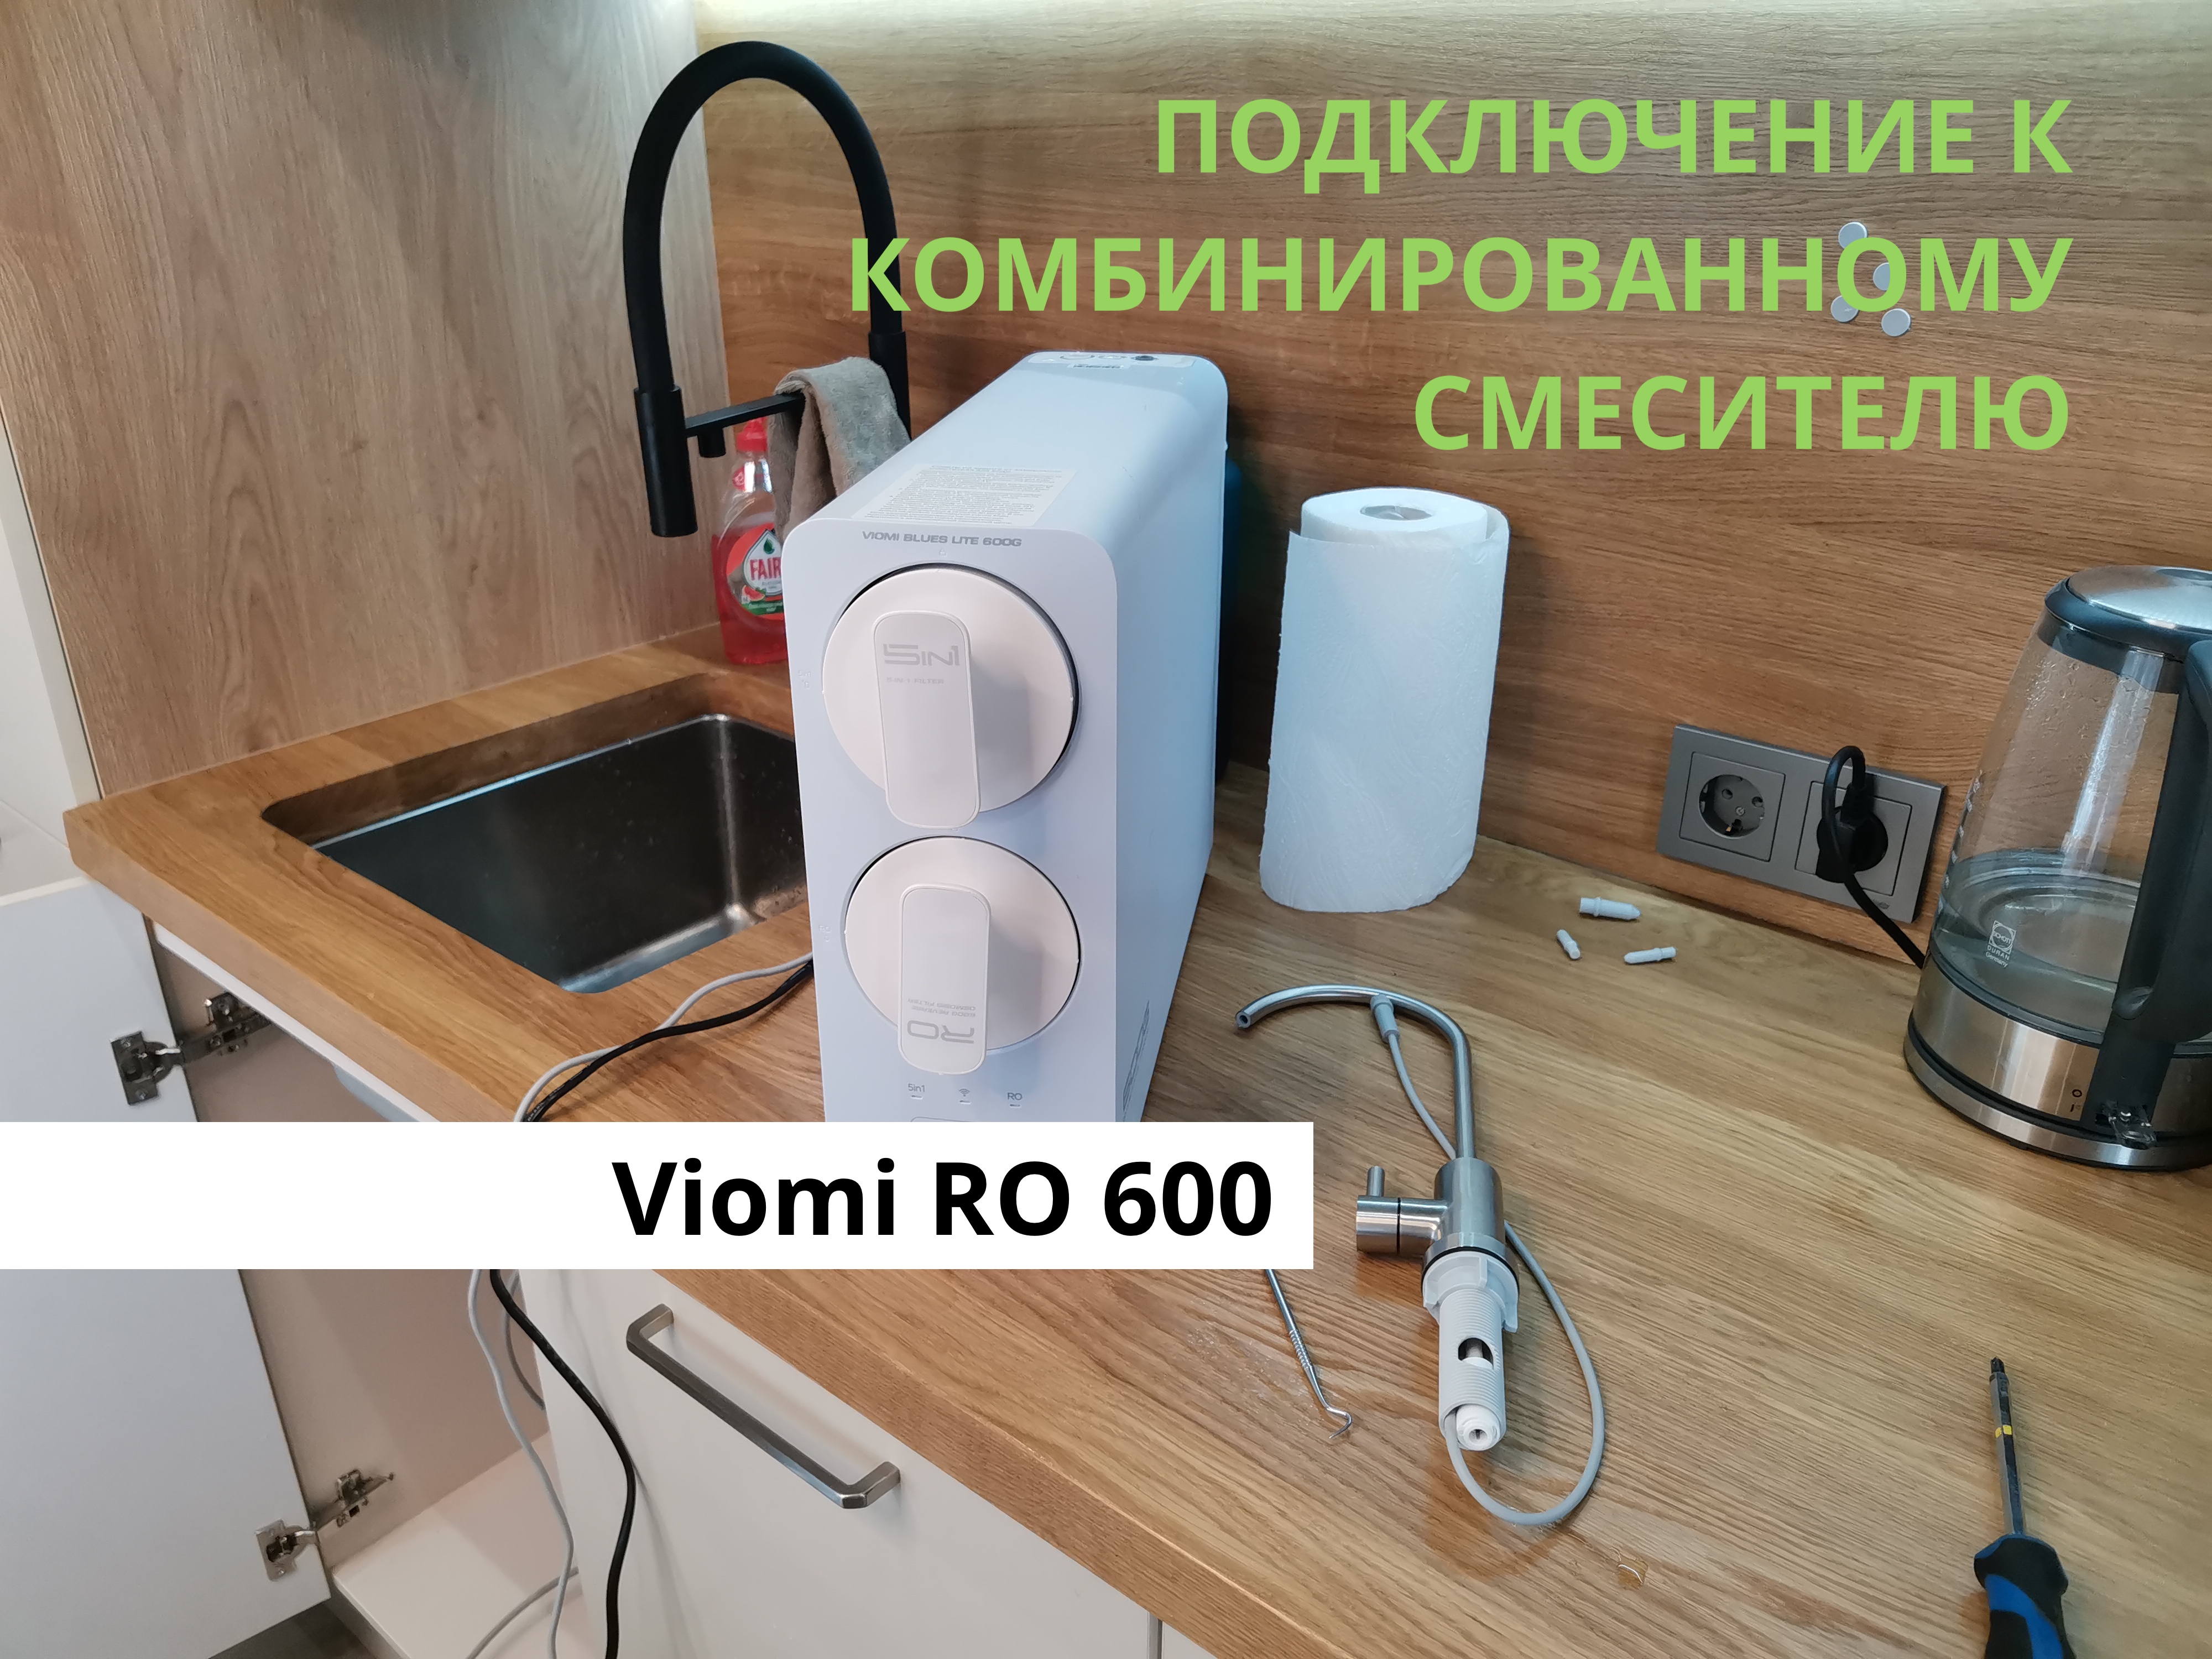 Viomi RO 600 Подключаем систему к комбинированному смесителю